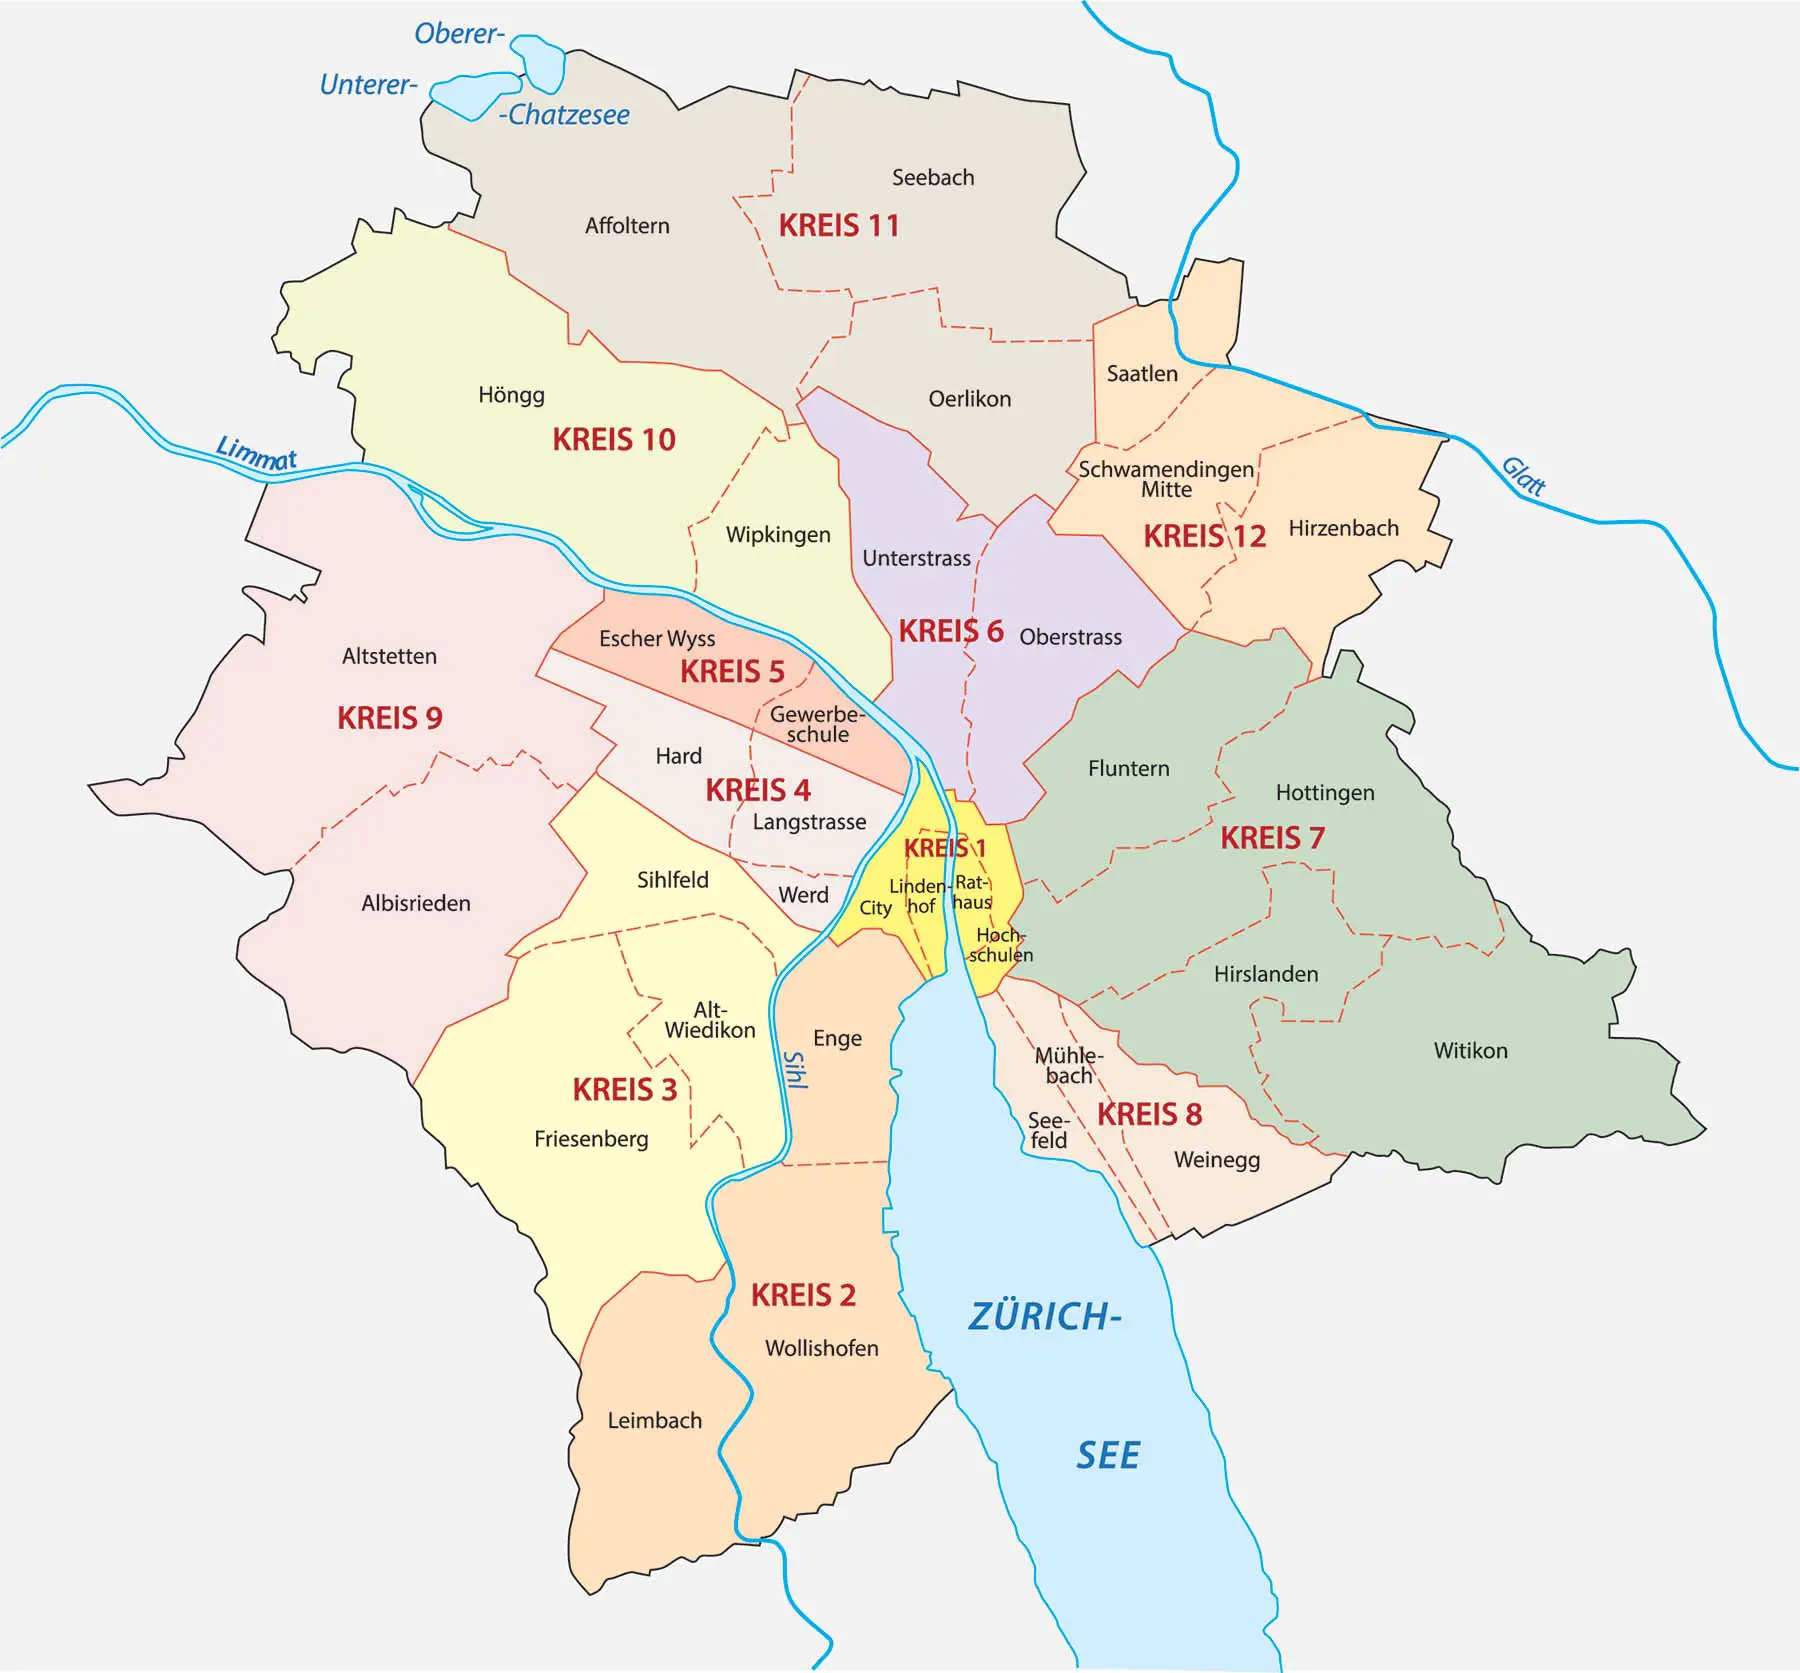 Zurich districts